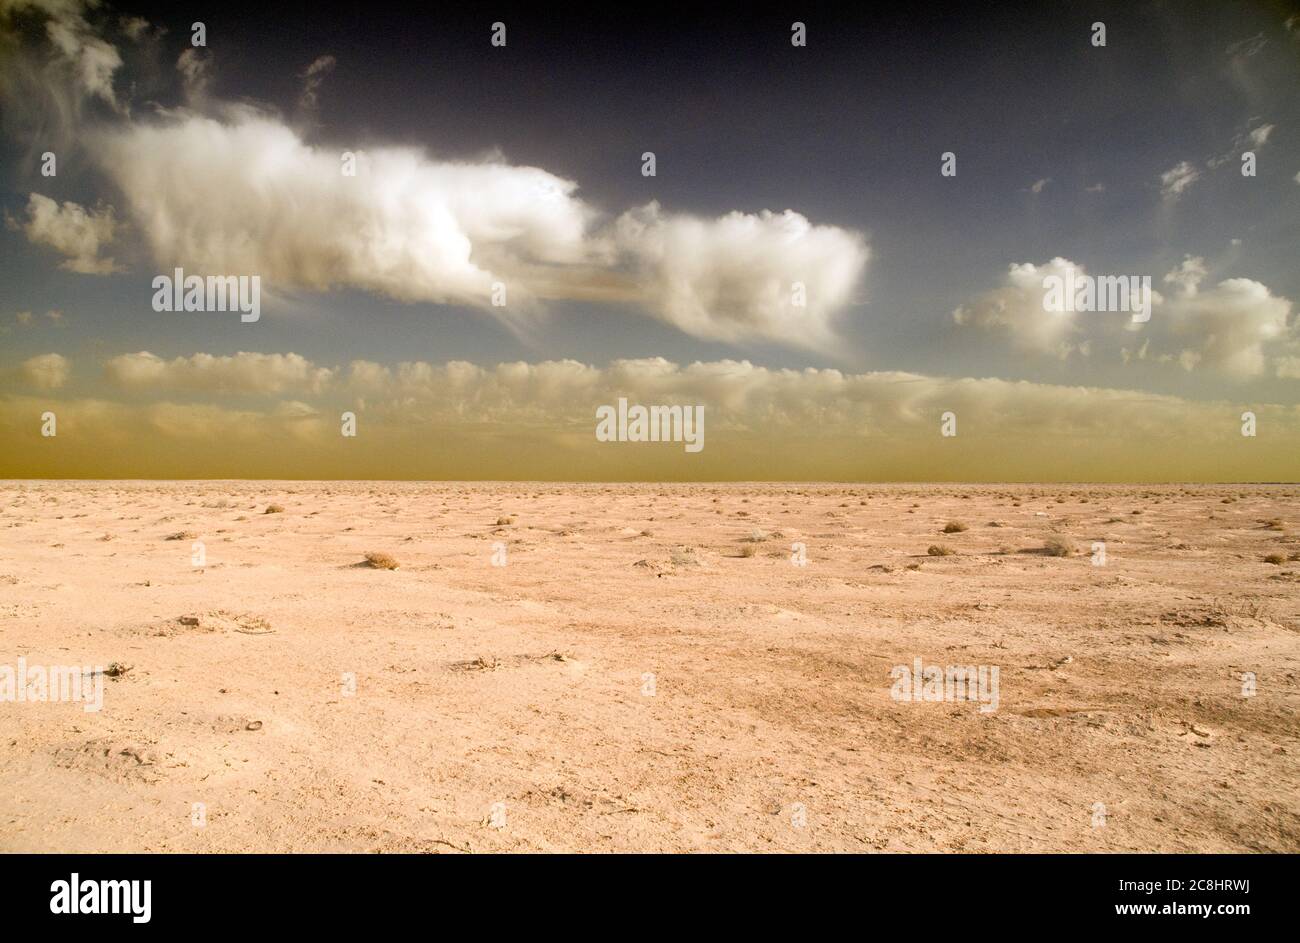 La regione Badia del desolato deserto orientale Giordano lungo il confine dell'Arabia Saudita, vicino ad al-Omari, Giordania. Foto Stock